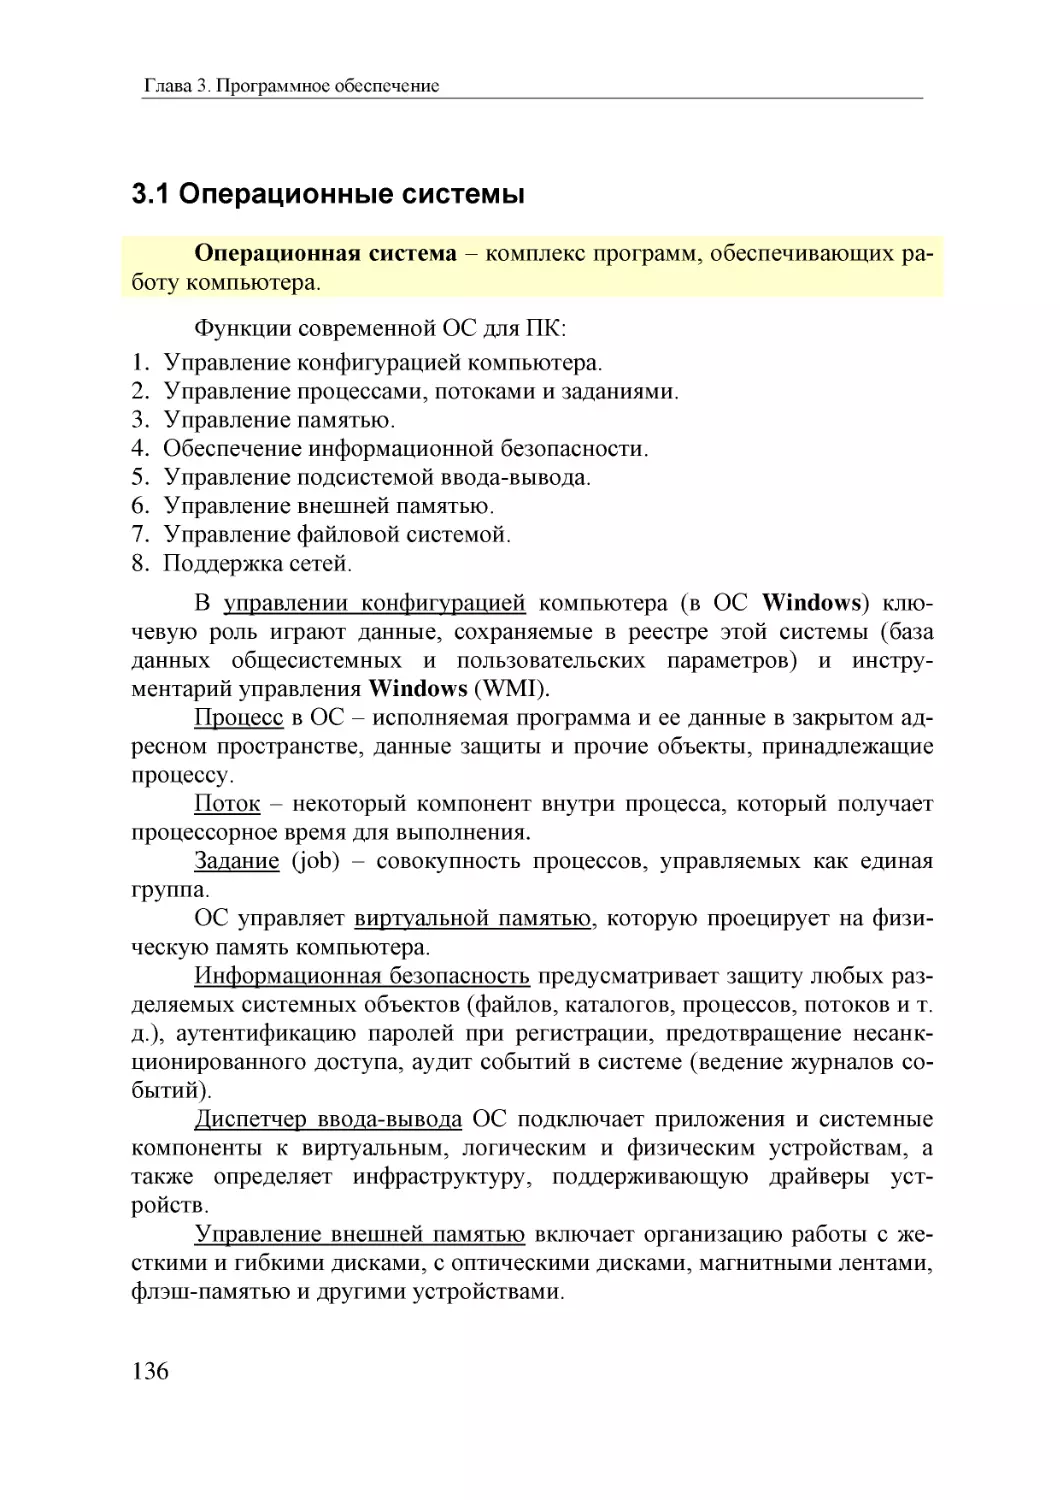 Informatika_Uchebnik_dlya_vuzov_2010 136